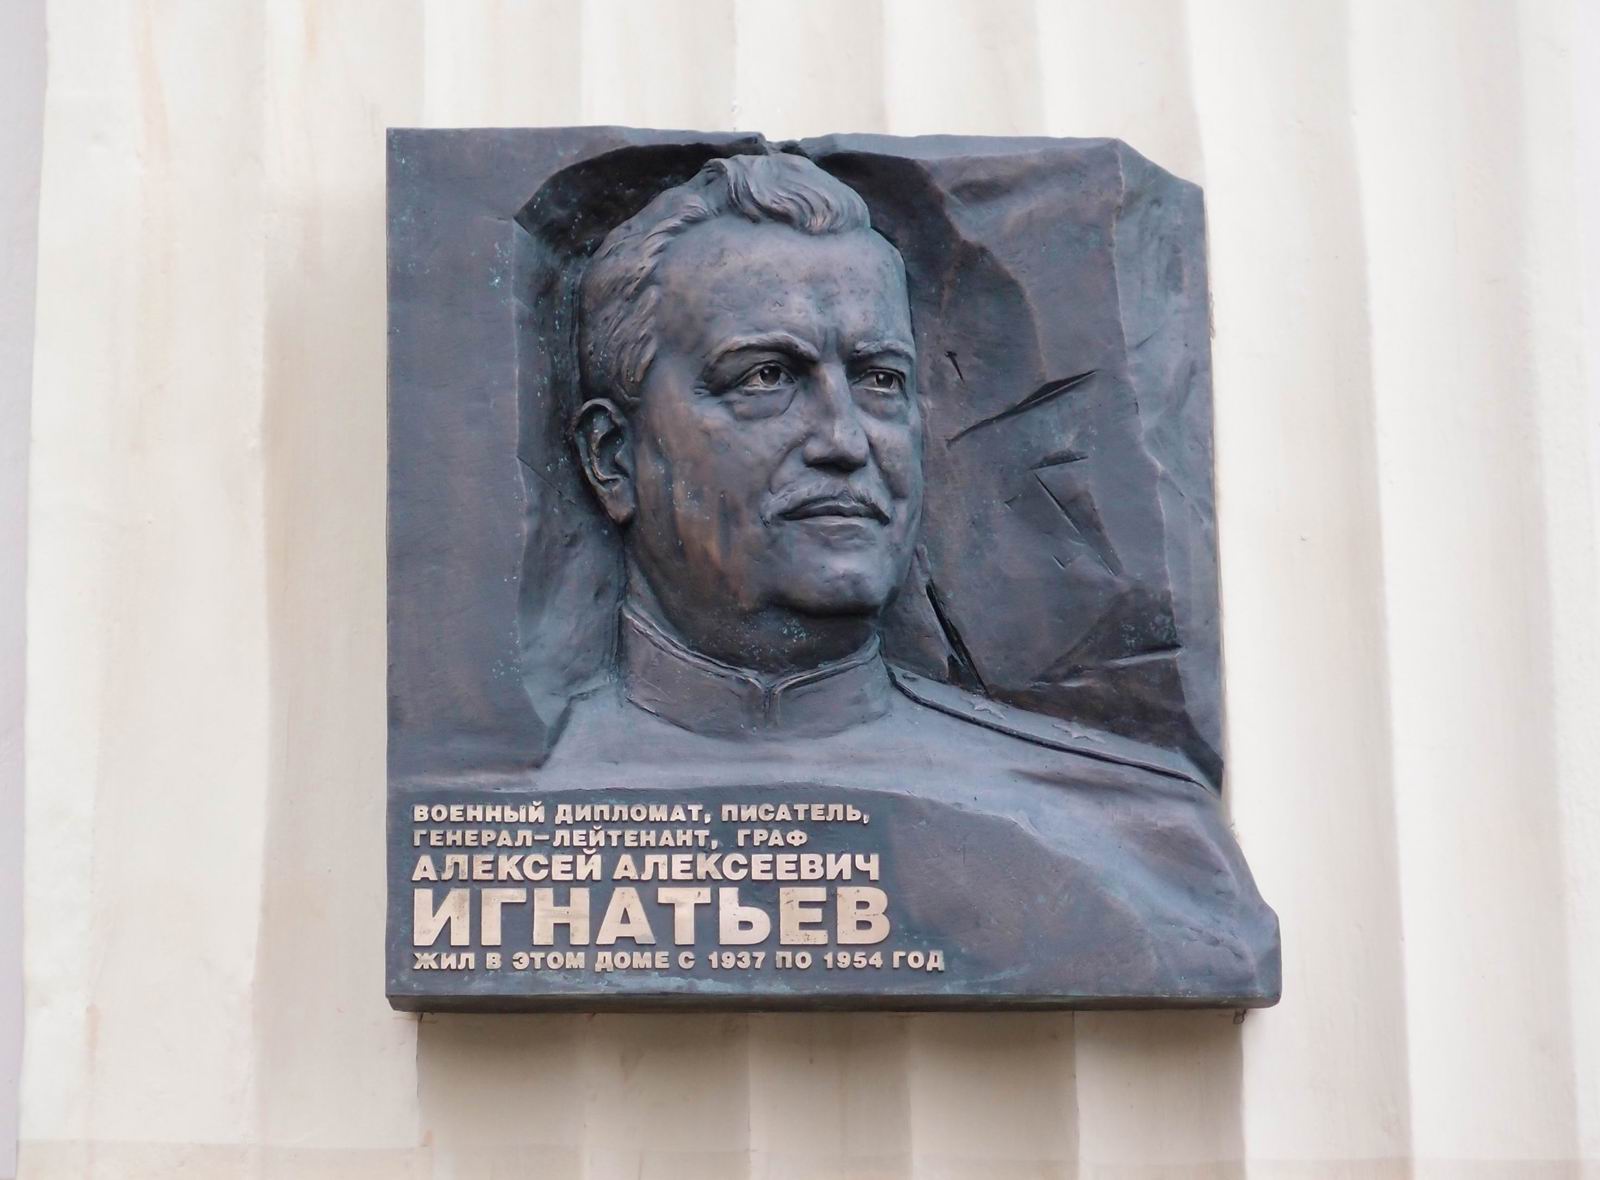 Мемориальная доска Игнатьеву А.А. (1877-1954), ск. С.А.Щербаков, в Лубянском проезде, дом 17, открыта 14.3.2018.